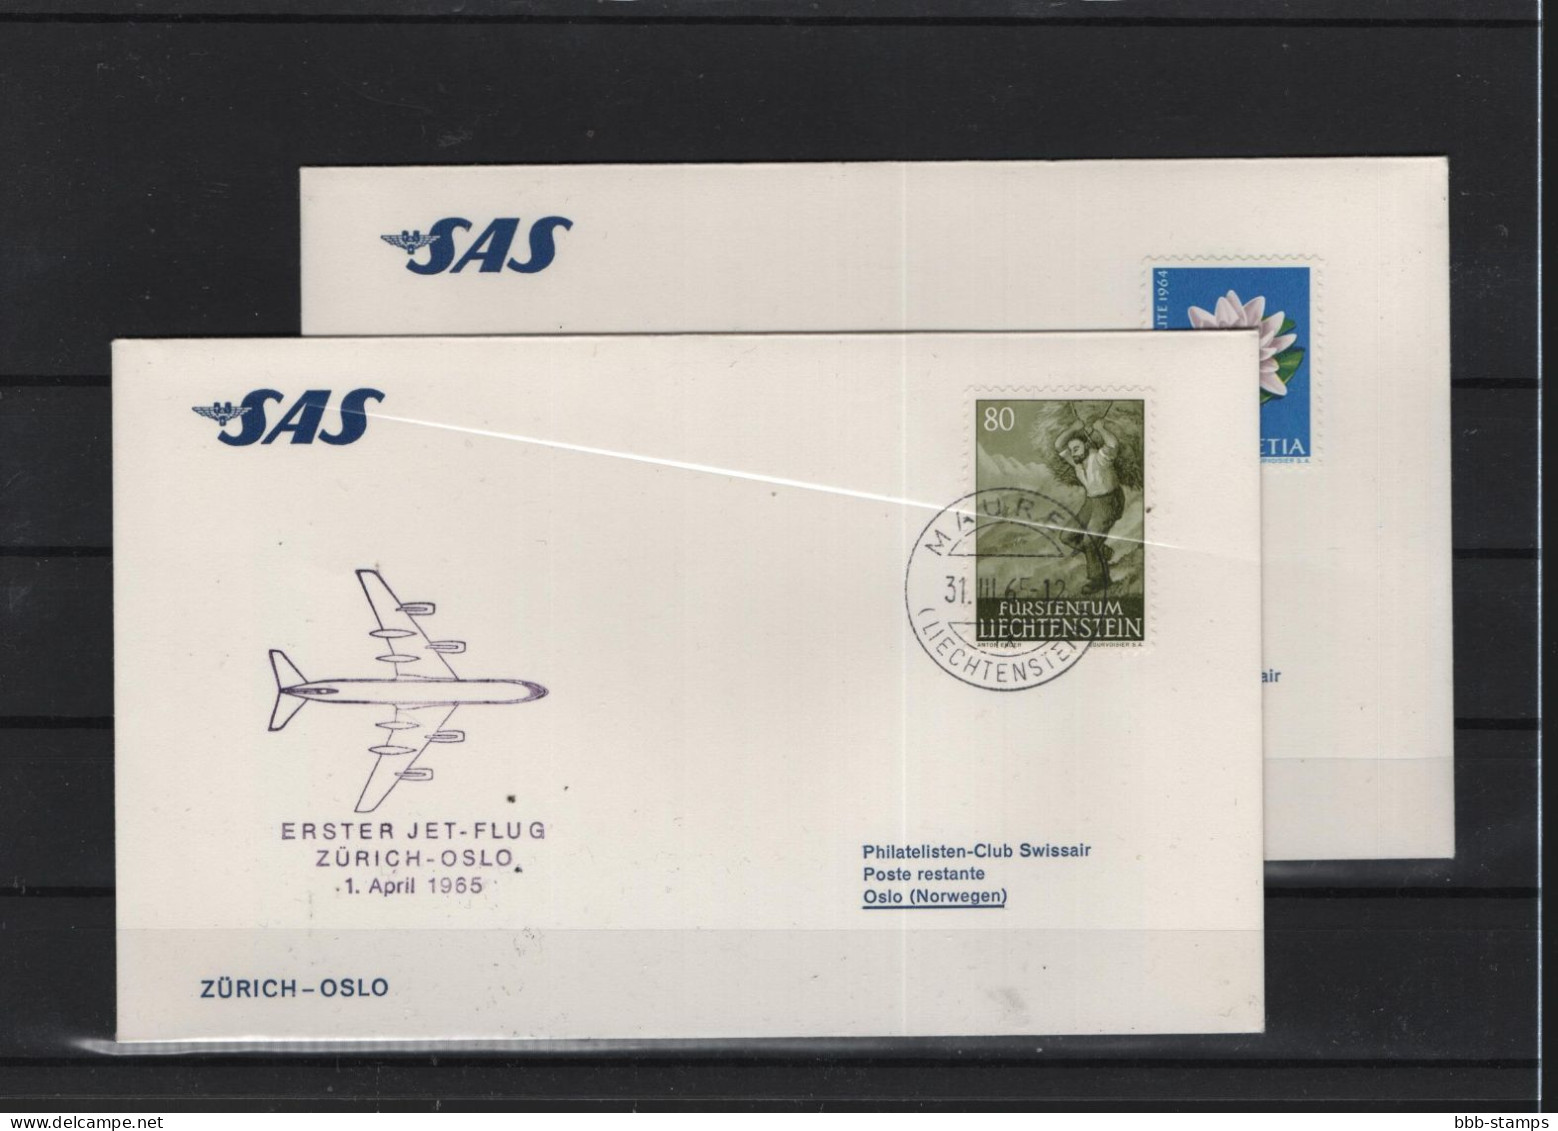 Schweiz Luftpost FFC SAS  1.4.1965 Zürich - Oslo - Premiers Vols